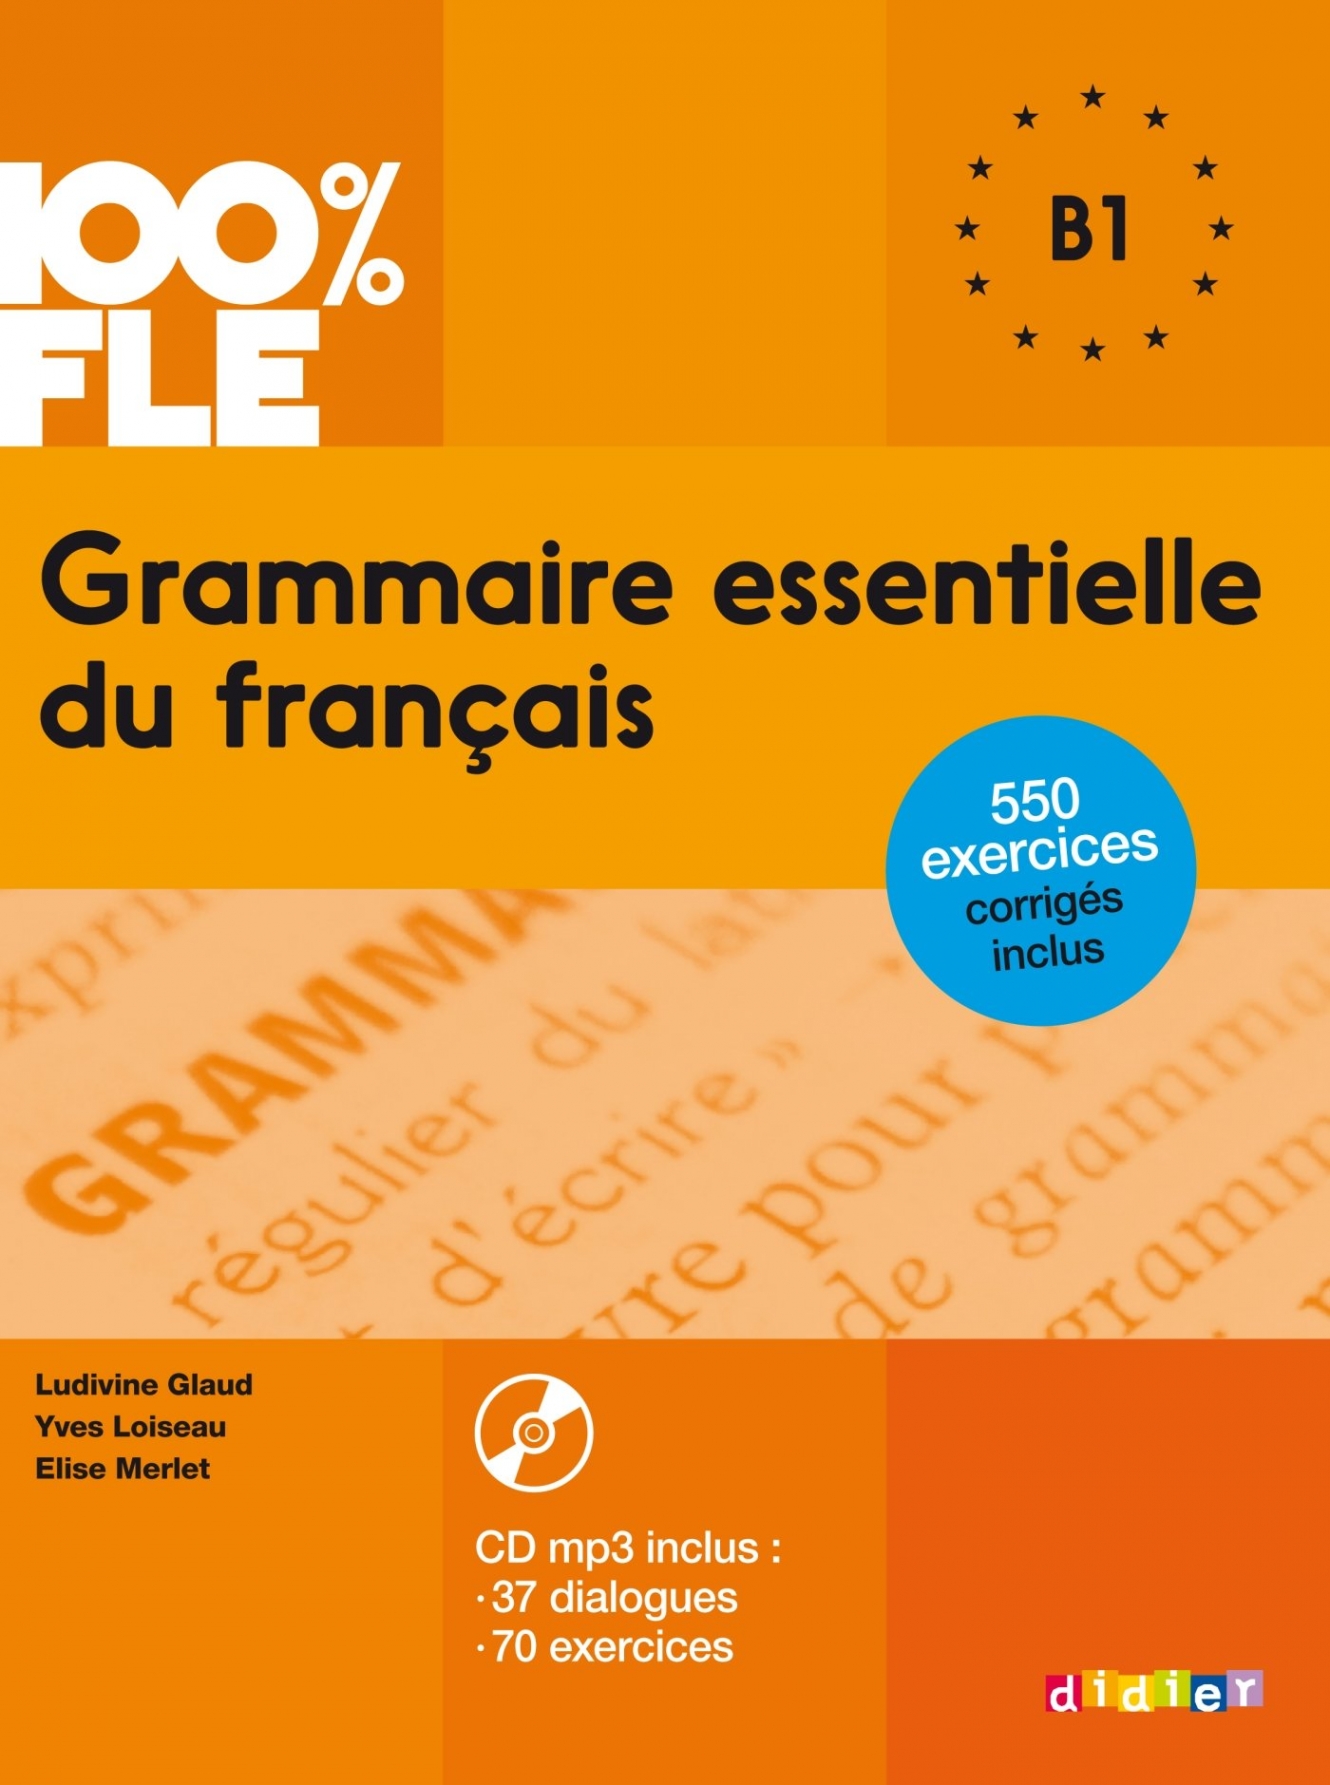 M., Glaud, L.; Lannier Glaud, L.; Lannier, M. Grammaire essentielle du francais B1 - livre. Didier.2018 / :    1 